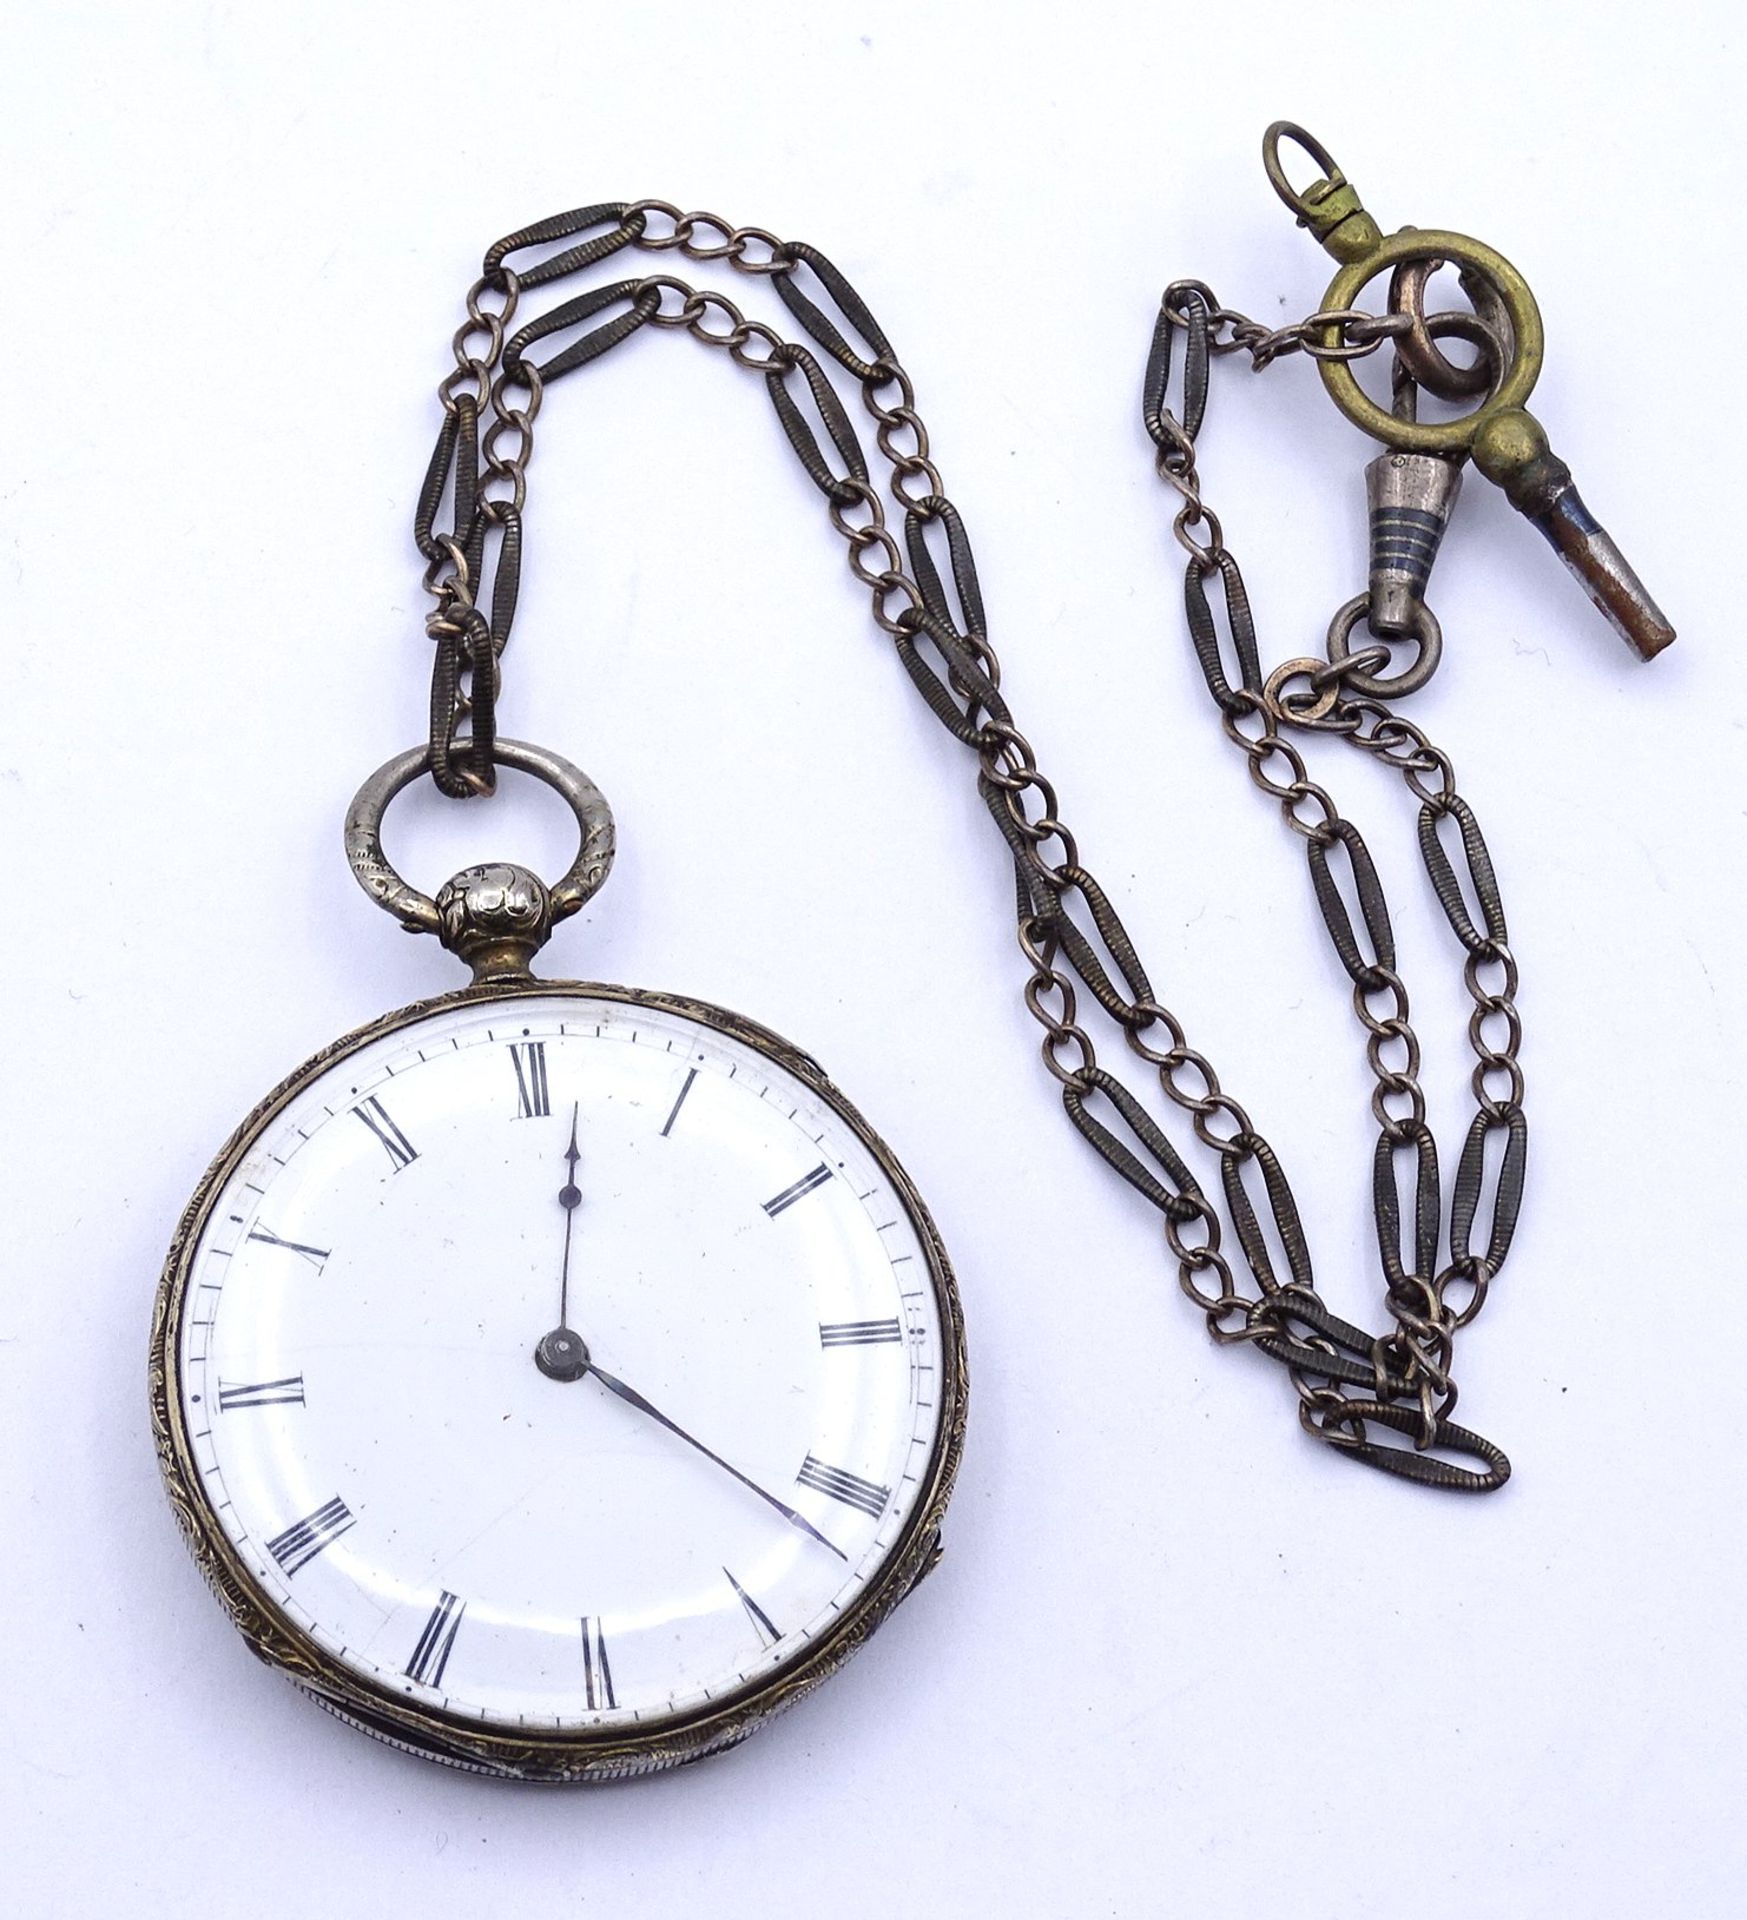 Taschenuhr, Markenlos, Silbergehäuse, anbei Uhrenkette aus Silber, Schlüsselwerk, Werk steht, D. 43